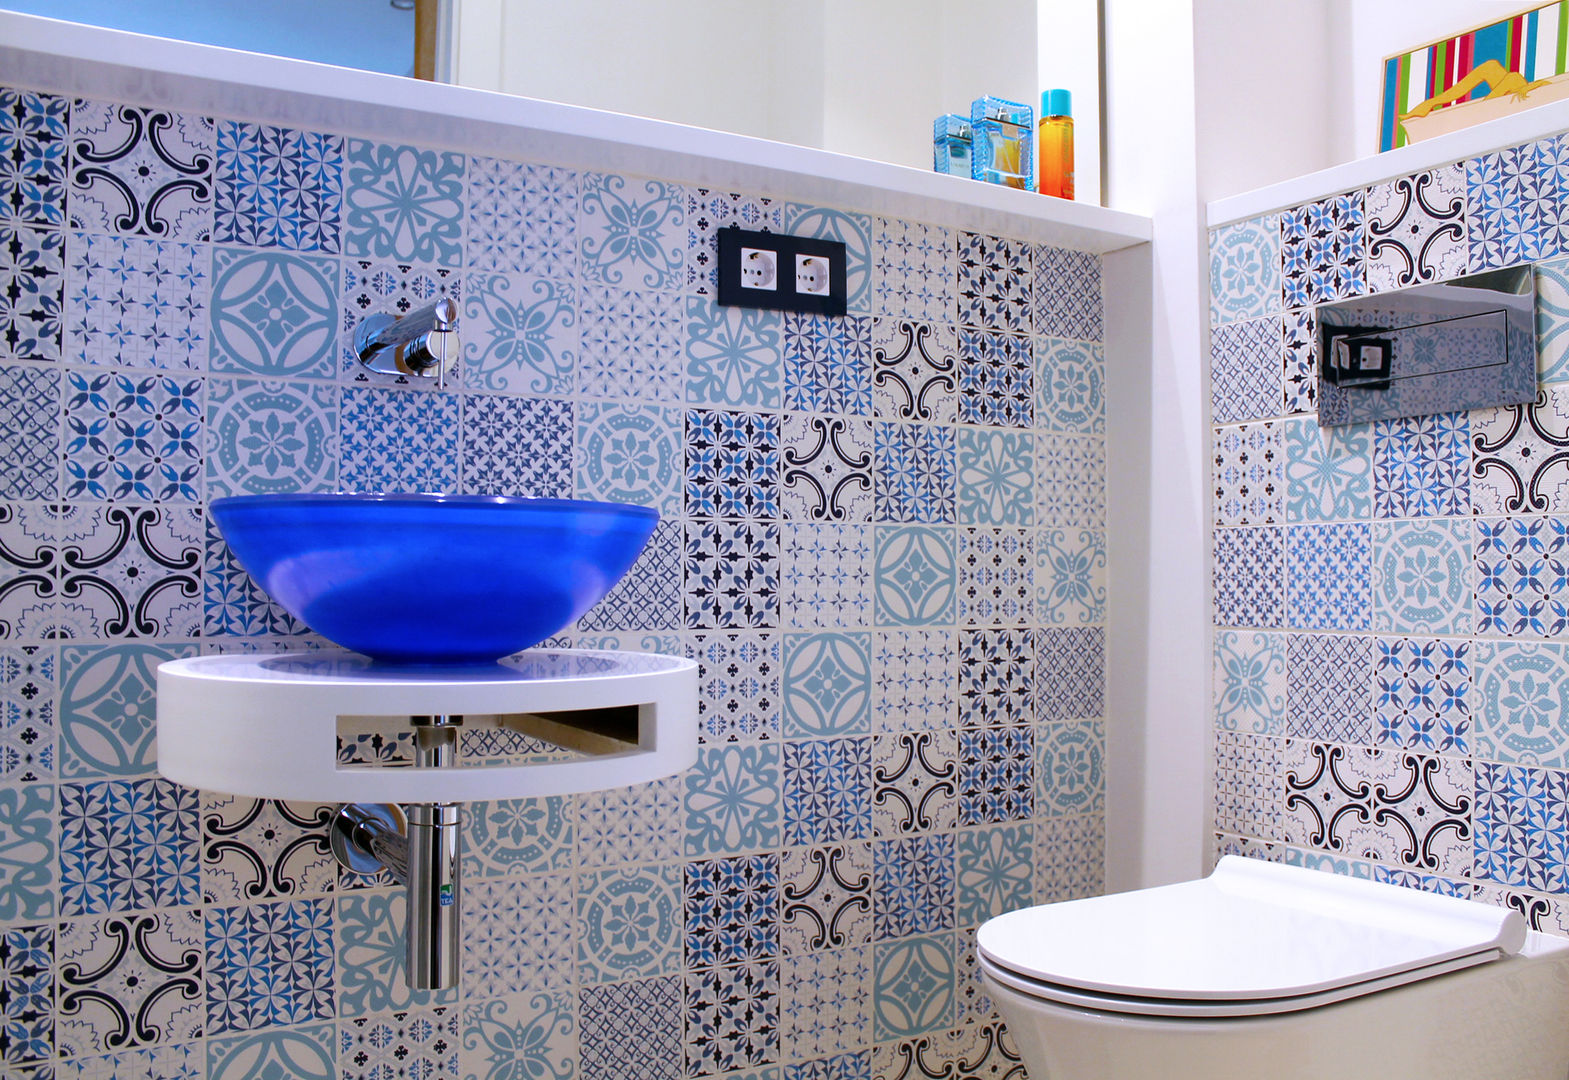 Baño suite. Eséncia mediterranea, lauraStrada Interiors lauraStrada Interiors 浴室